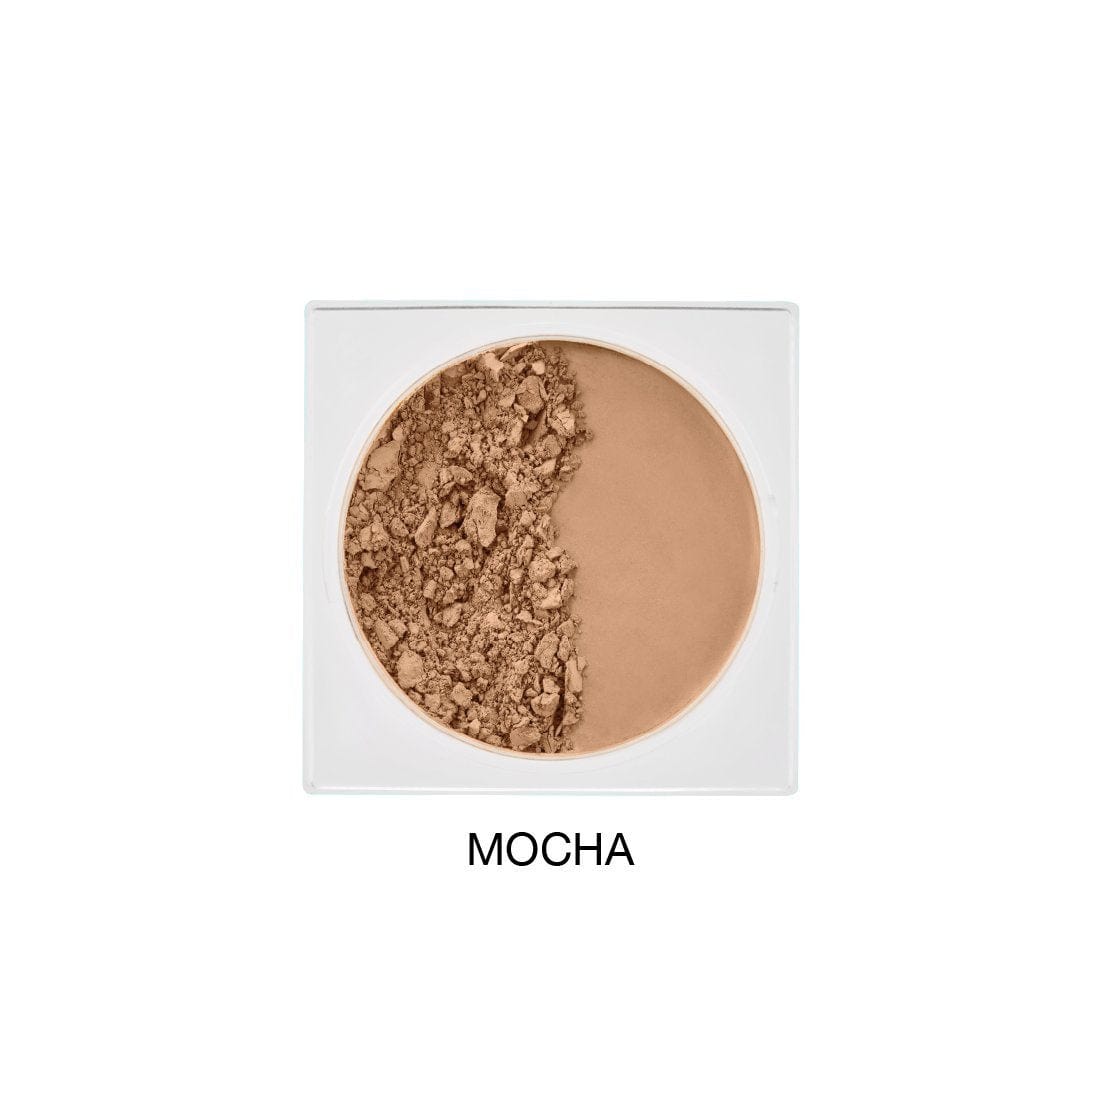 Mineral Powder Foundation - Mocha Makeup - Vani-T - Luxe Pacifique